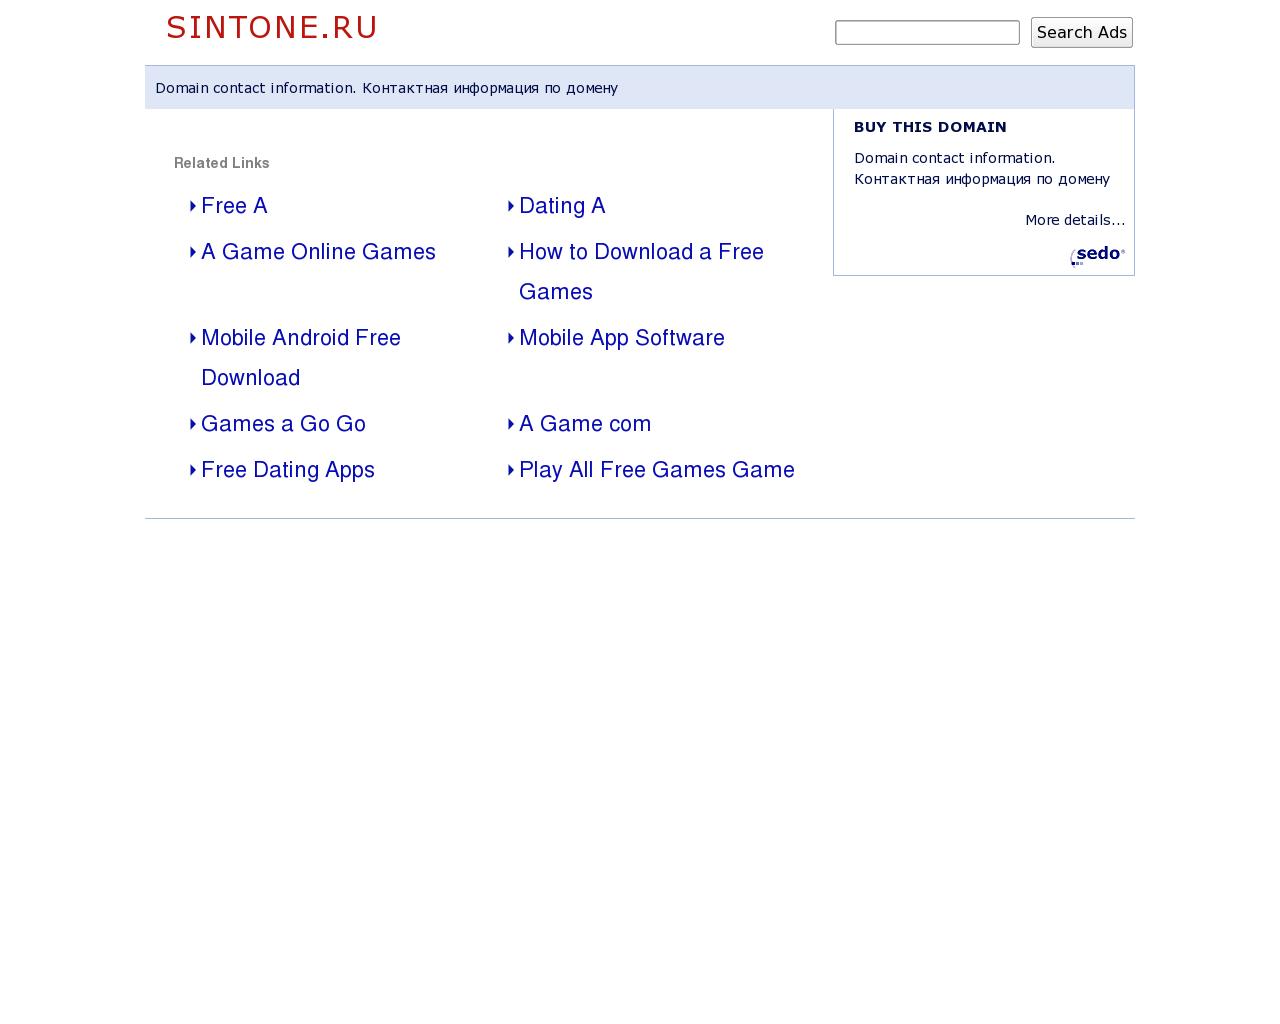 Изображение сайта sintone.ru в разрешении 1280x1024